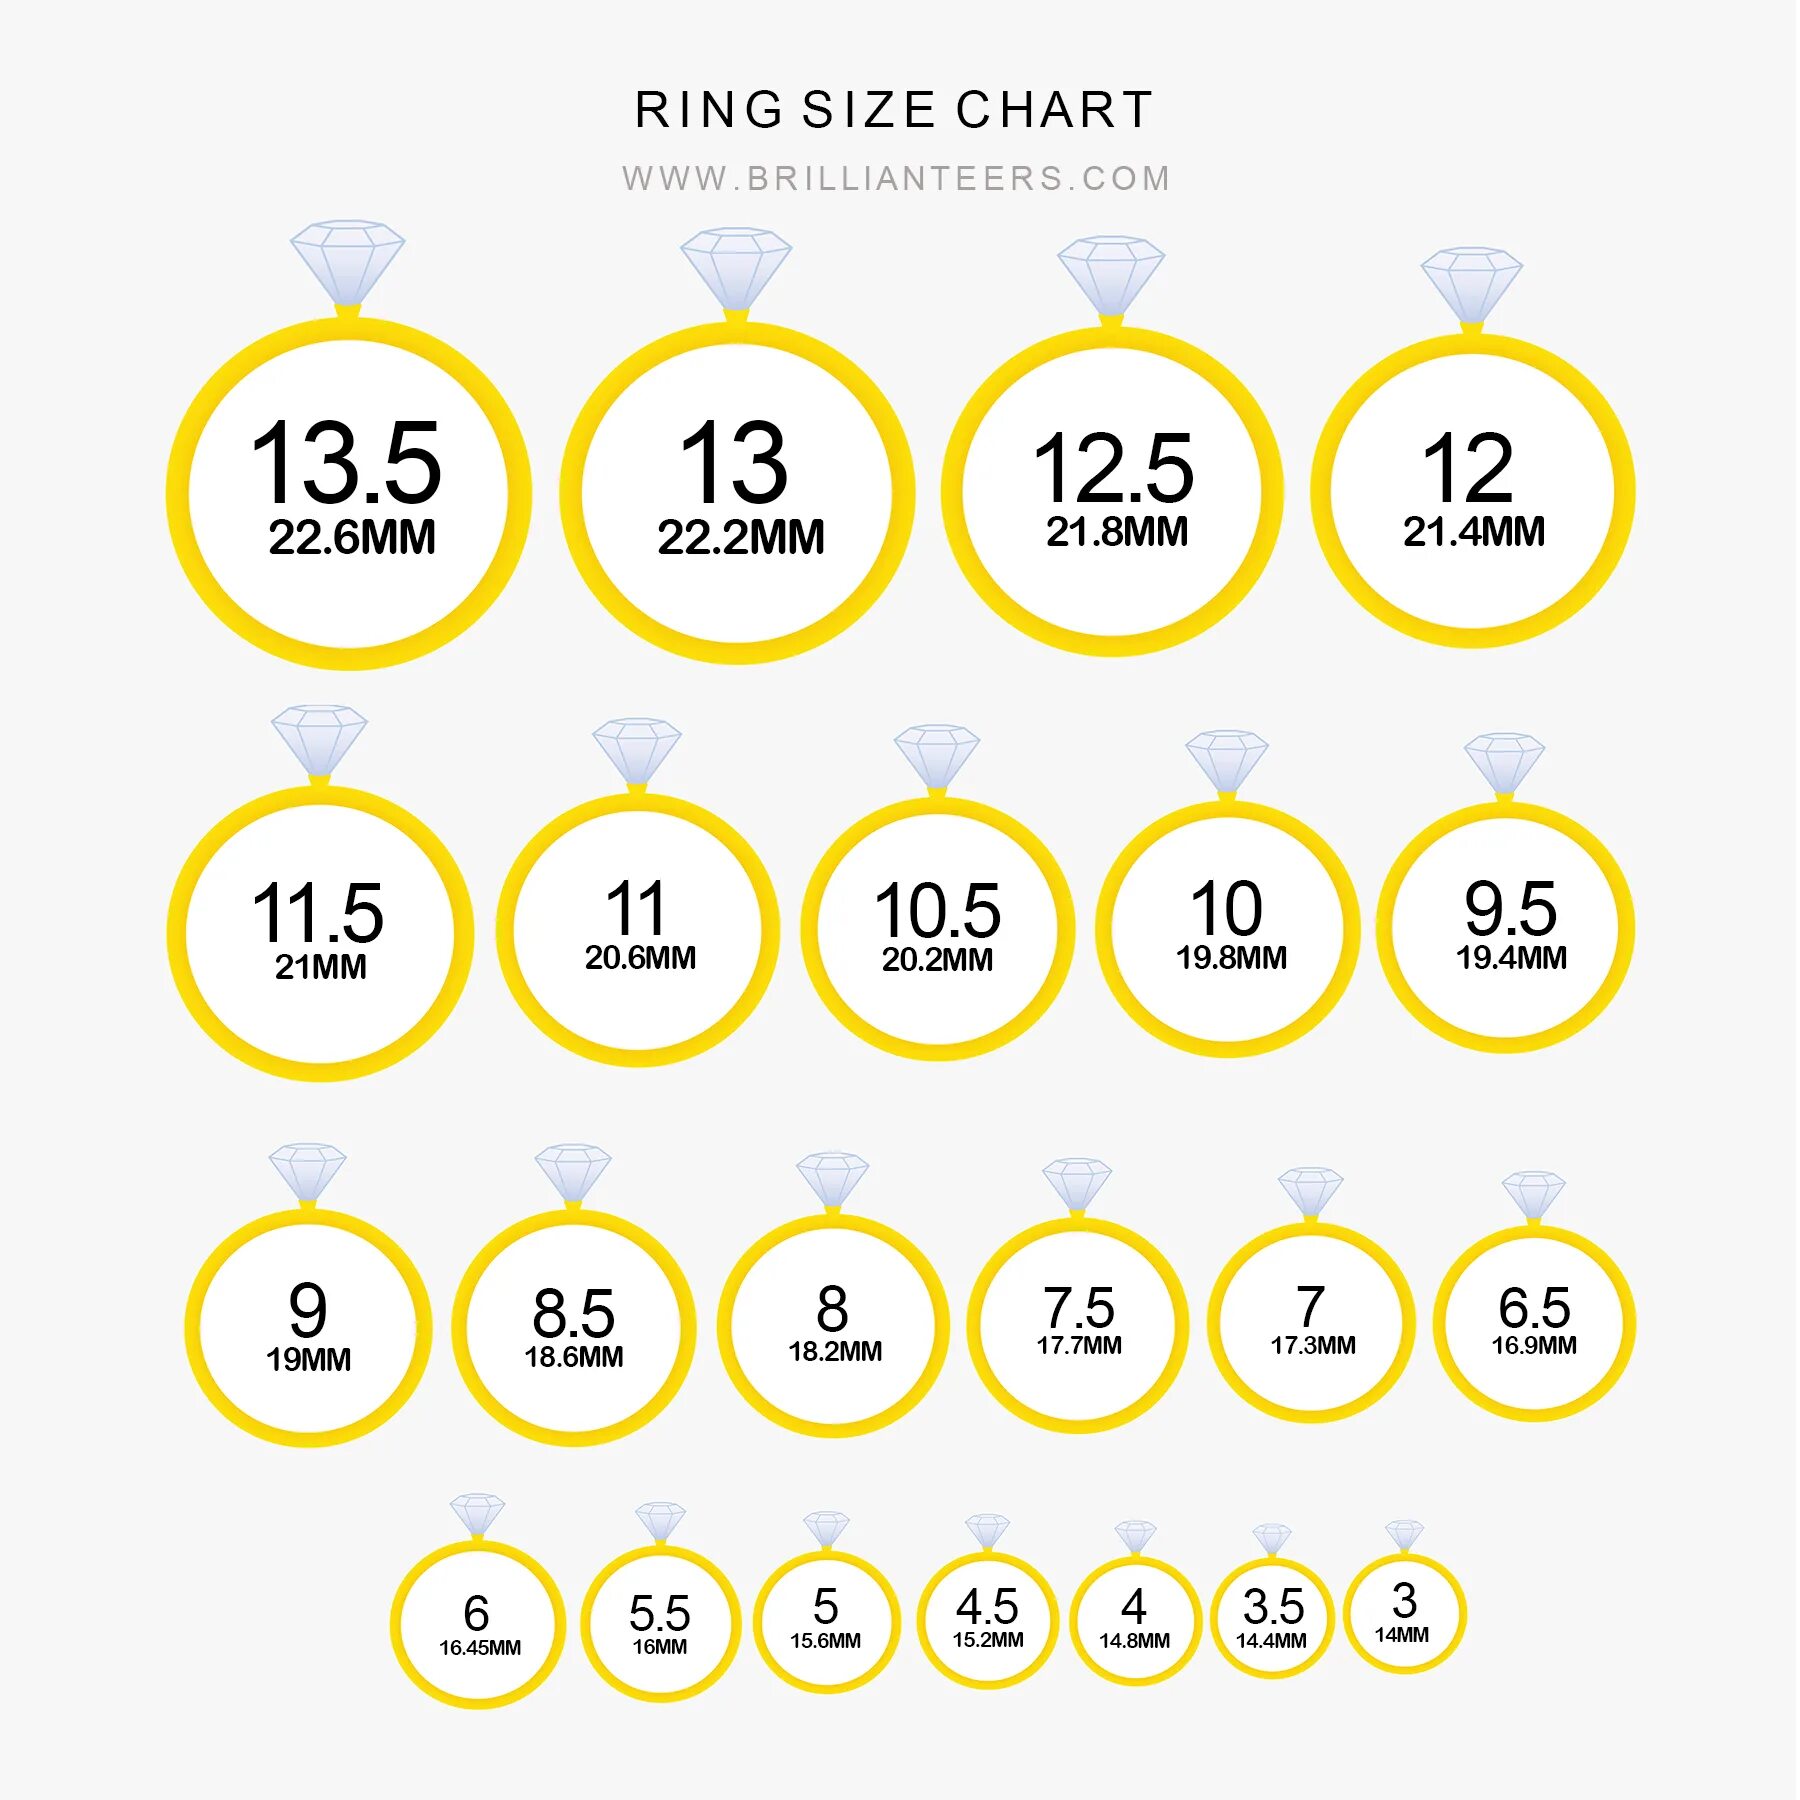 Размер кольца сколько мм. 6 Мм размер кольца. 6 Мм кольцо размер диаметр. Размер кольца диаметр 21.3 мм. 7 Мм в диаметре размер кольца.